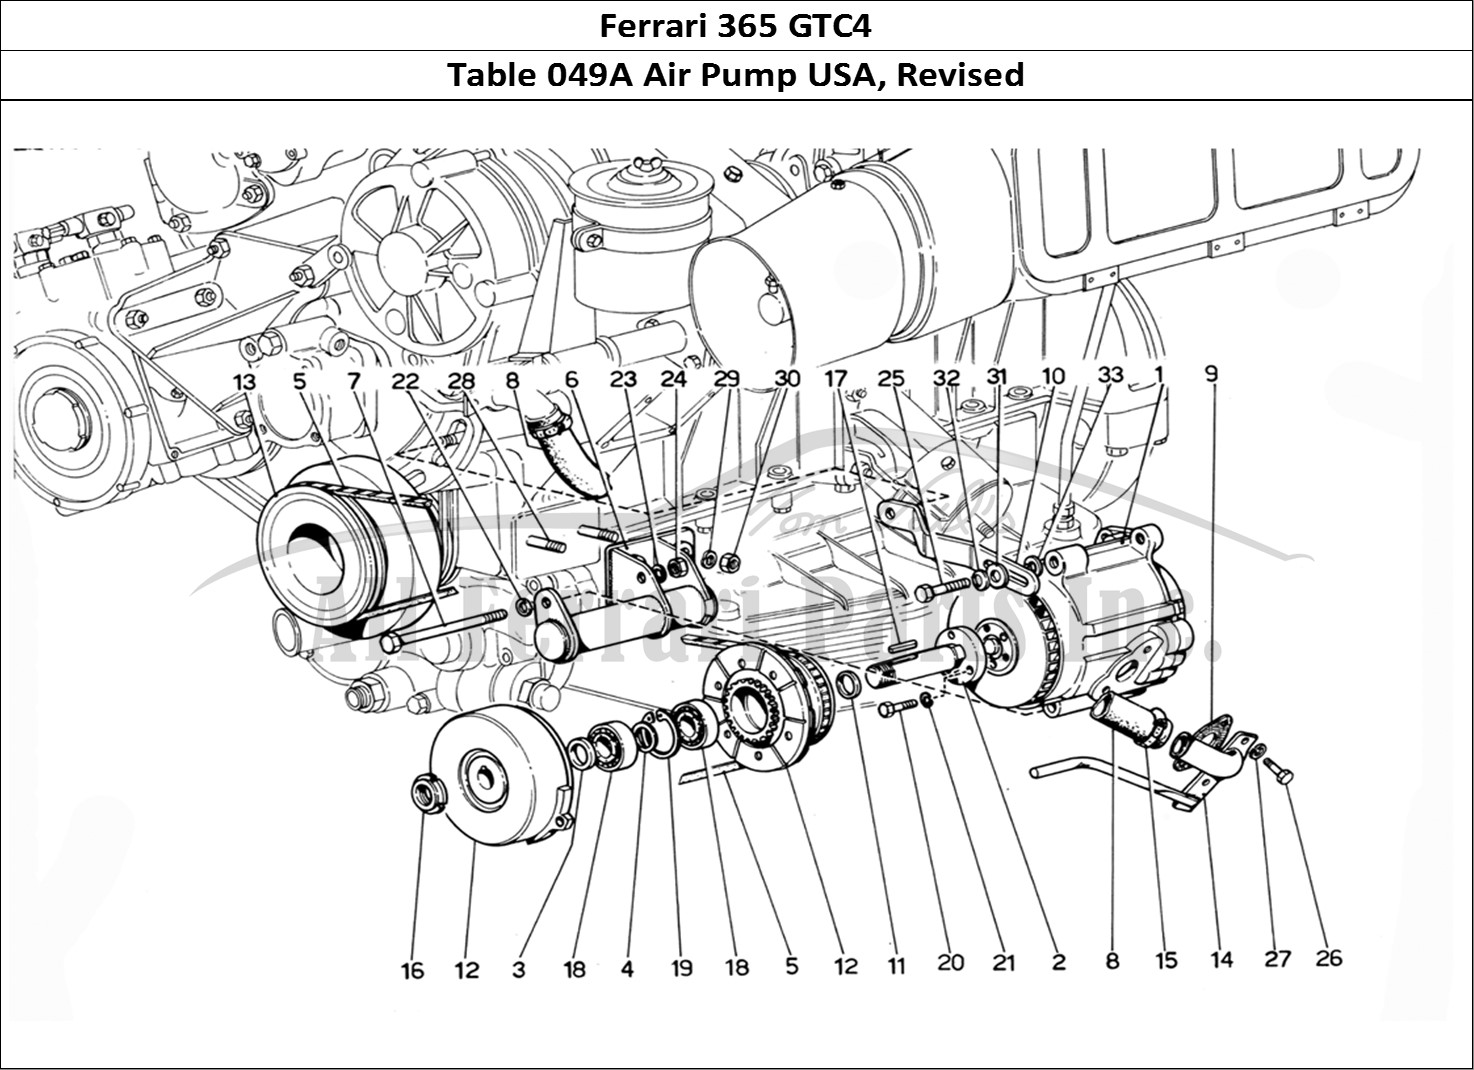 Ferrari Parts Ferrari 365 GTC4 (Mechanical) Page 049 USA Air pump - Revision